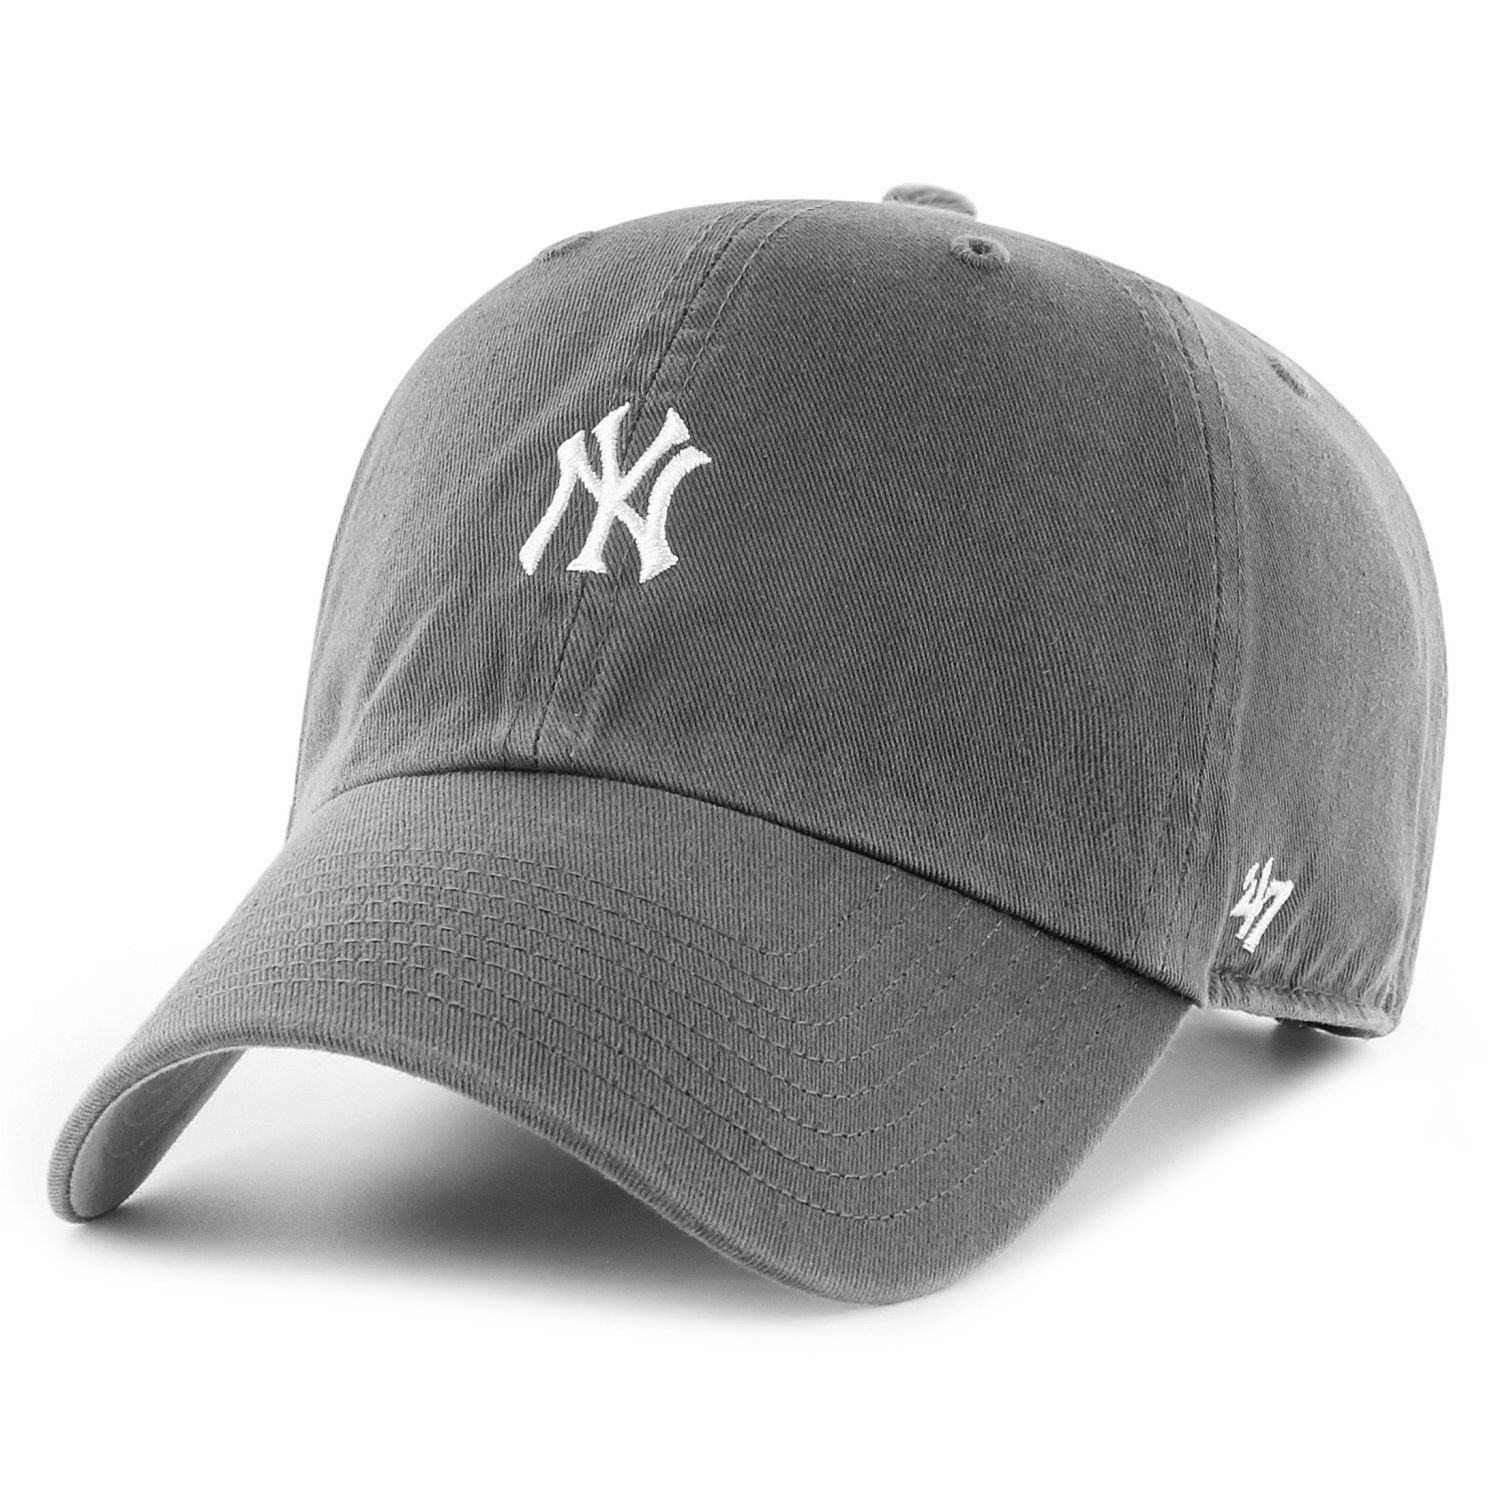 x27;47 Brand Baseball Cap BASE York New Yankees